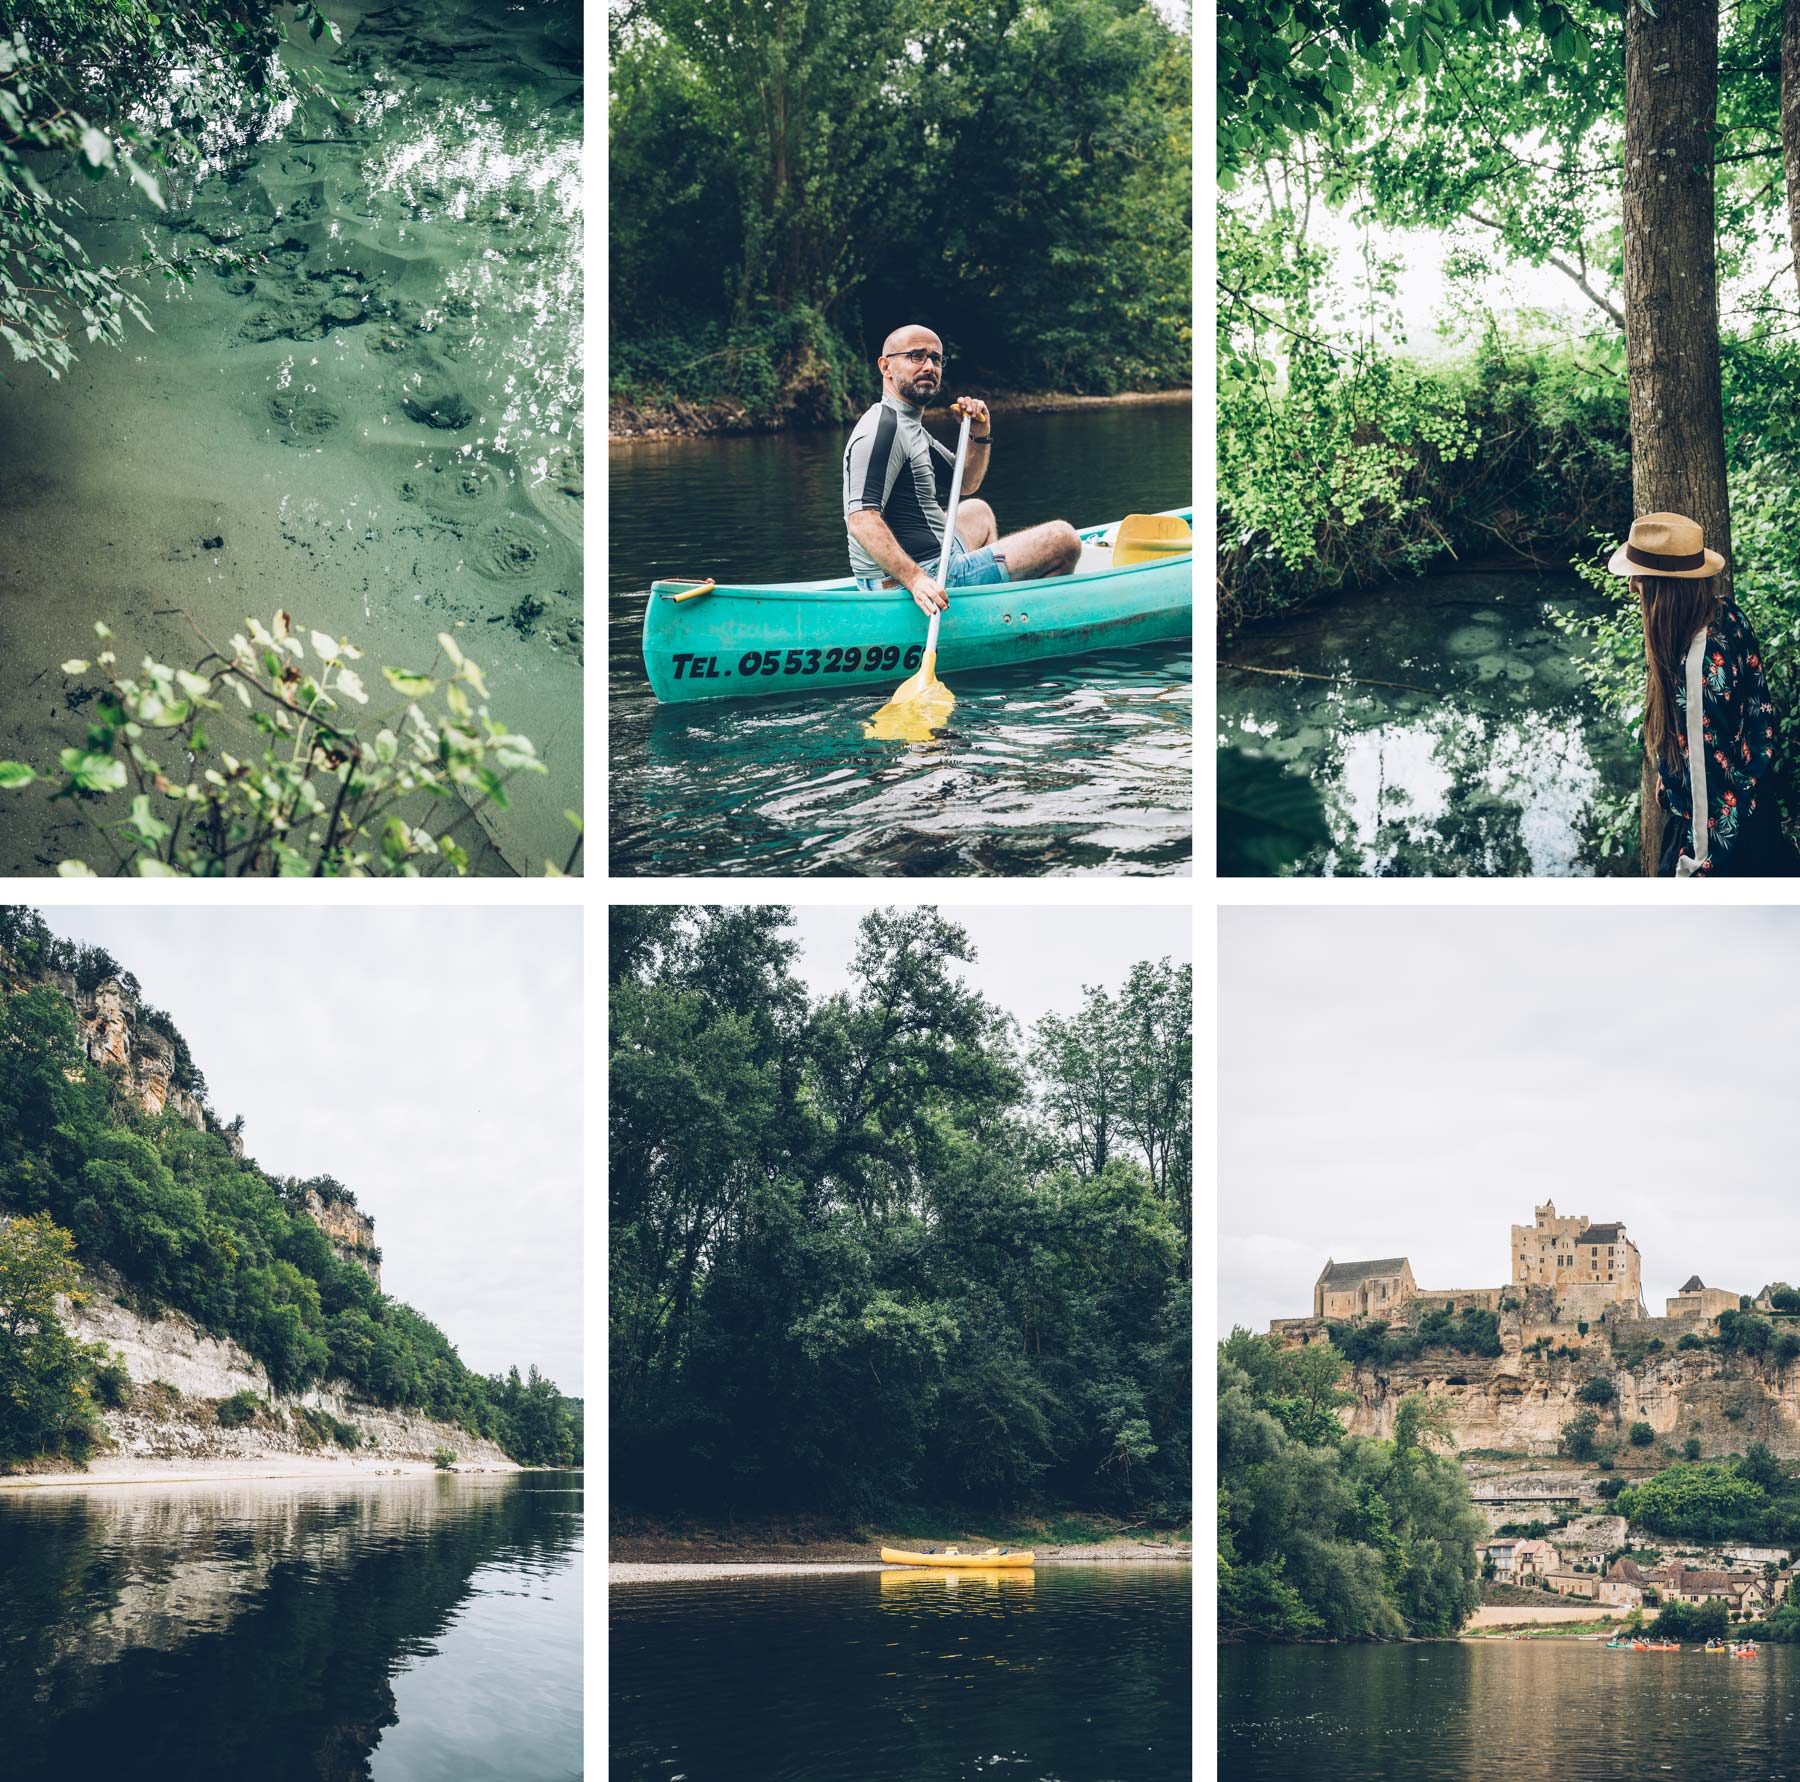 Canosphere, meilleure location canoe sur le Dordogne